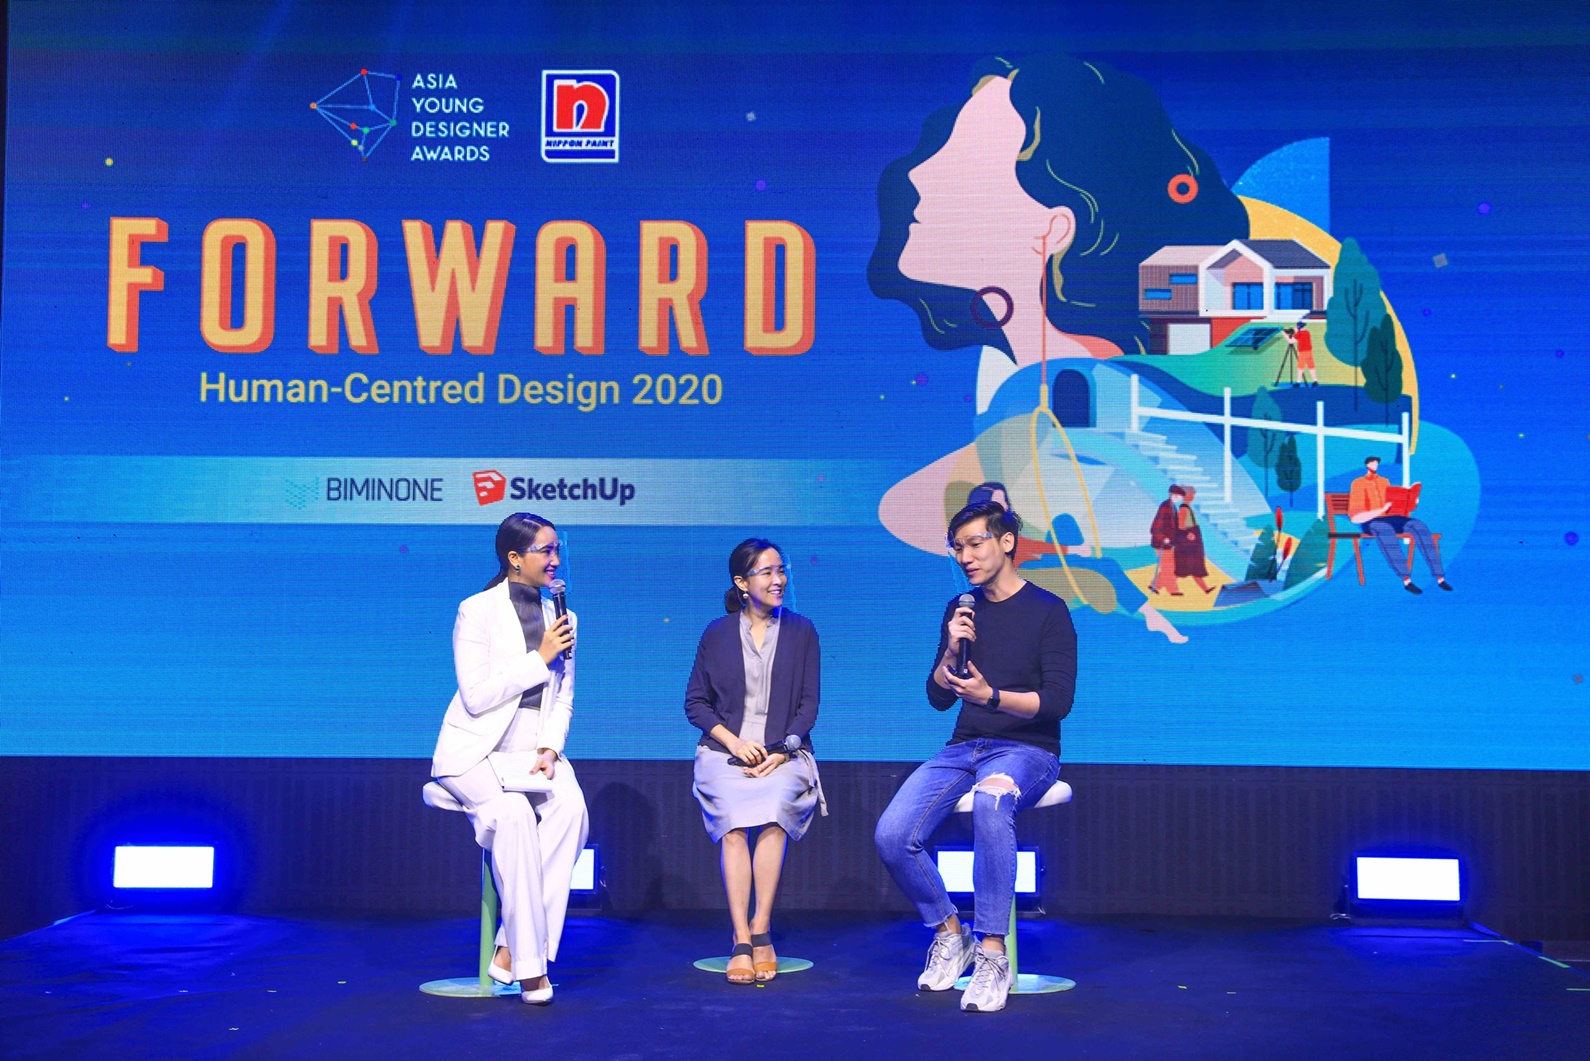 Asia Young Designer Awards: เวทีประกวดออกแบบระดับนานาชาติ จากนิปปอนเพนต์ ส่งเสริมนิสิตนักศึกษาเป็นนักออกแบบมืออาชีพ